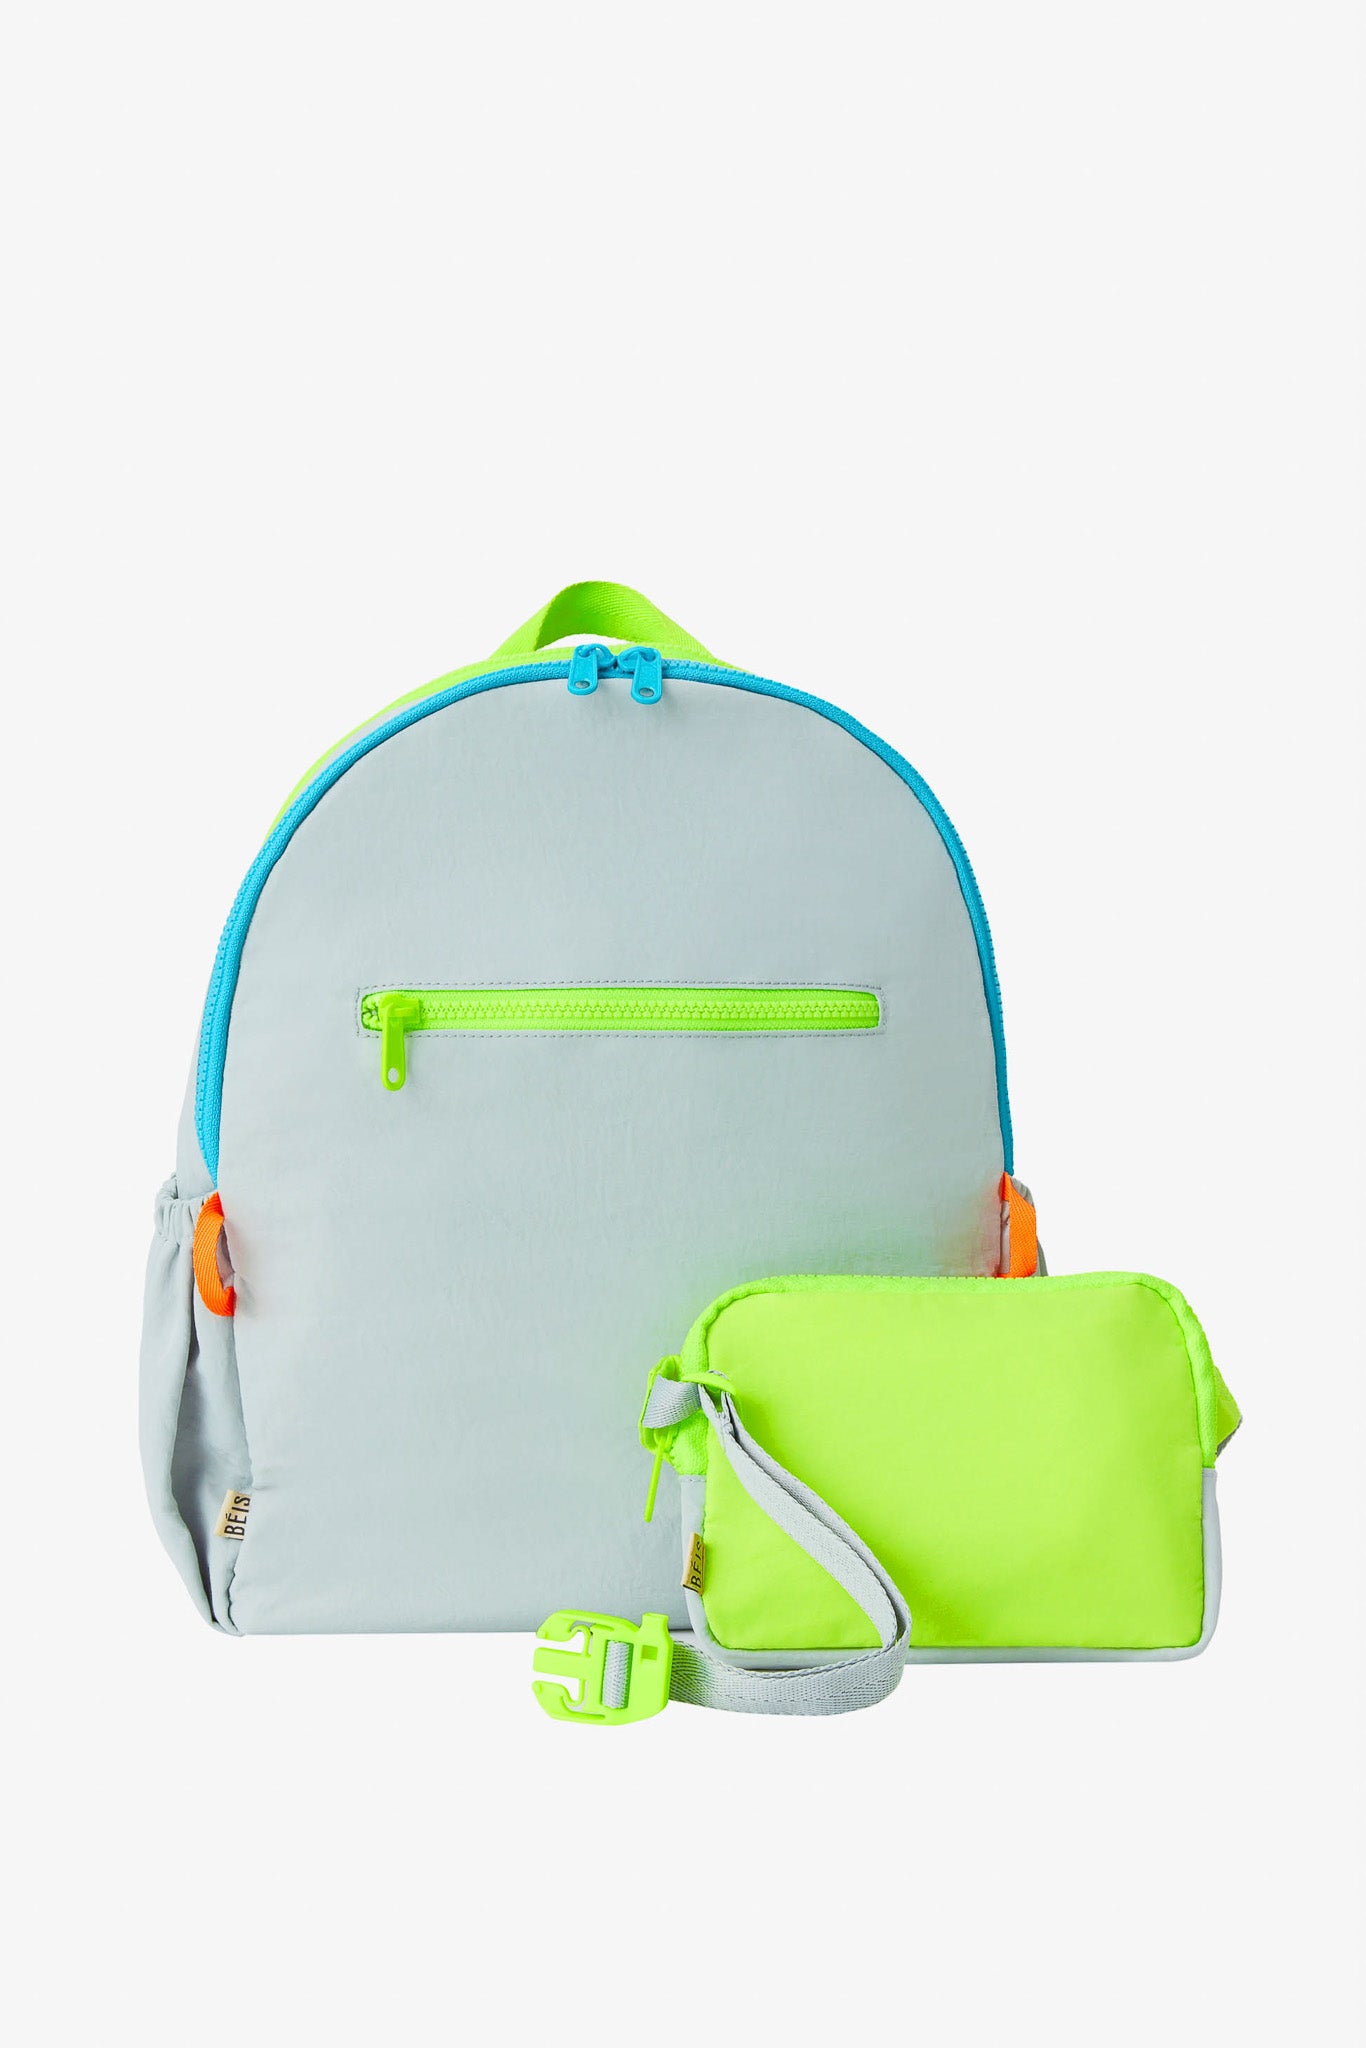 The Kids Backpack in Slate